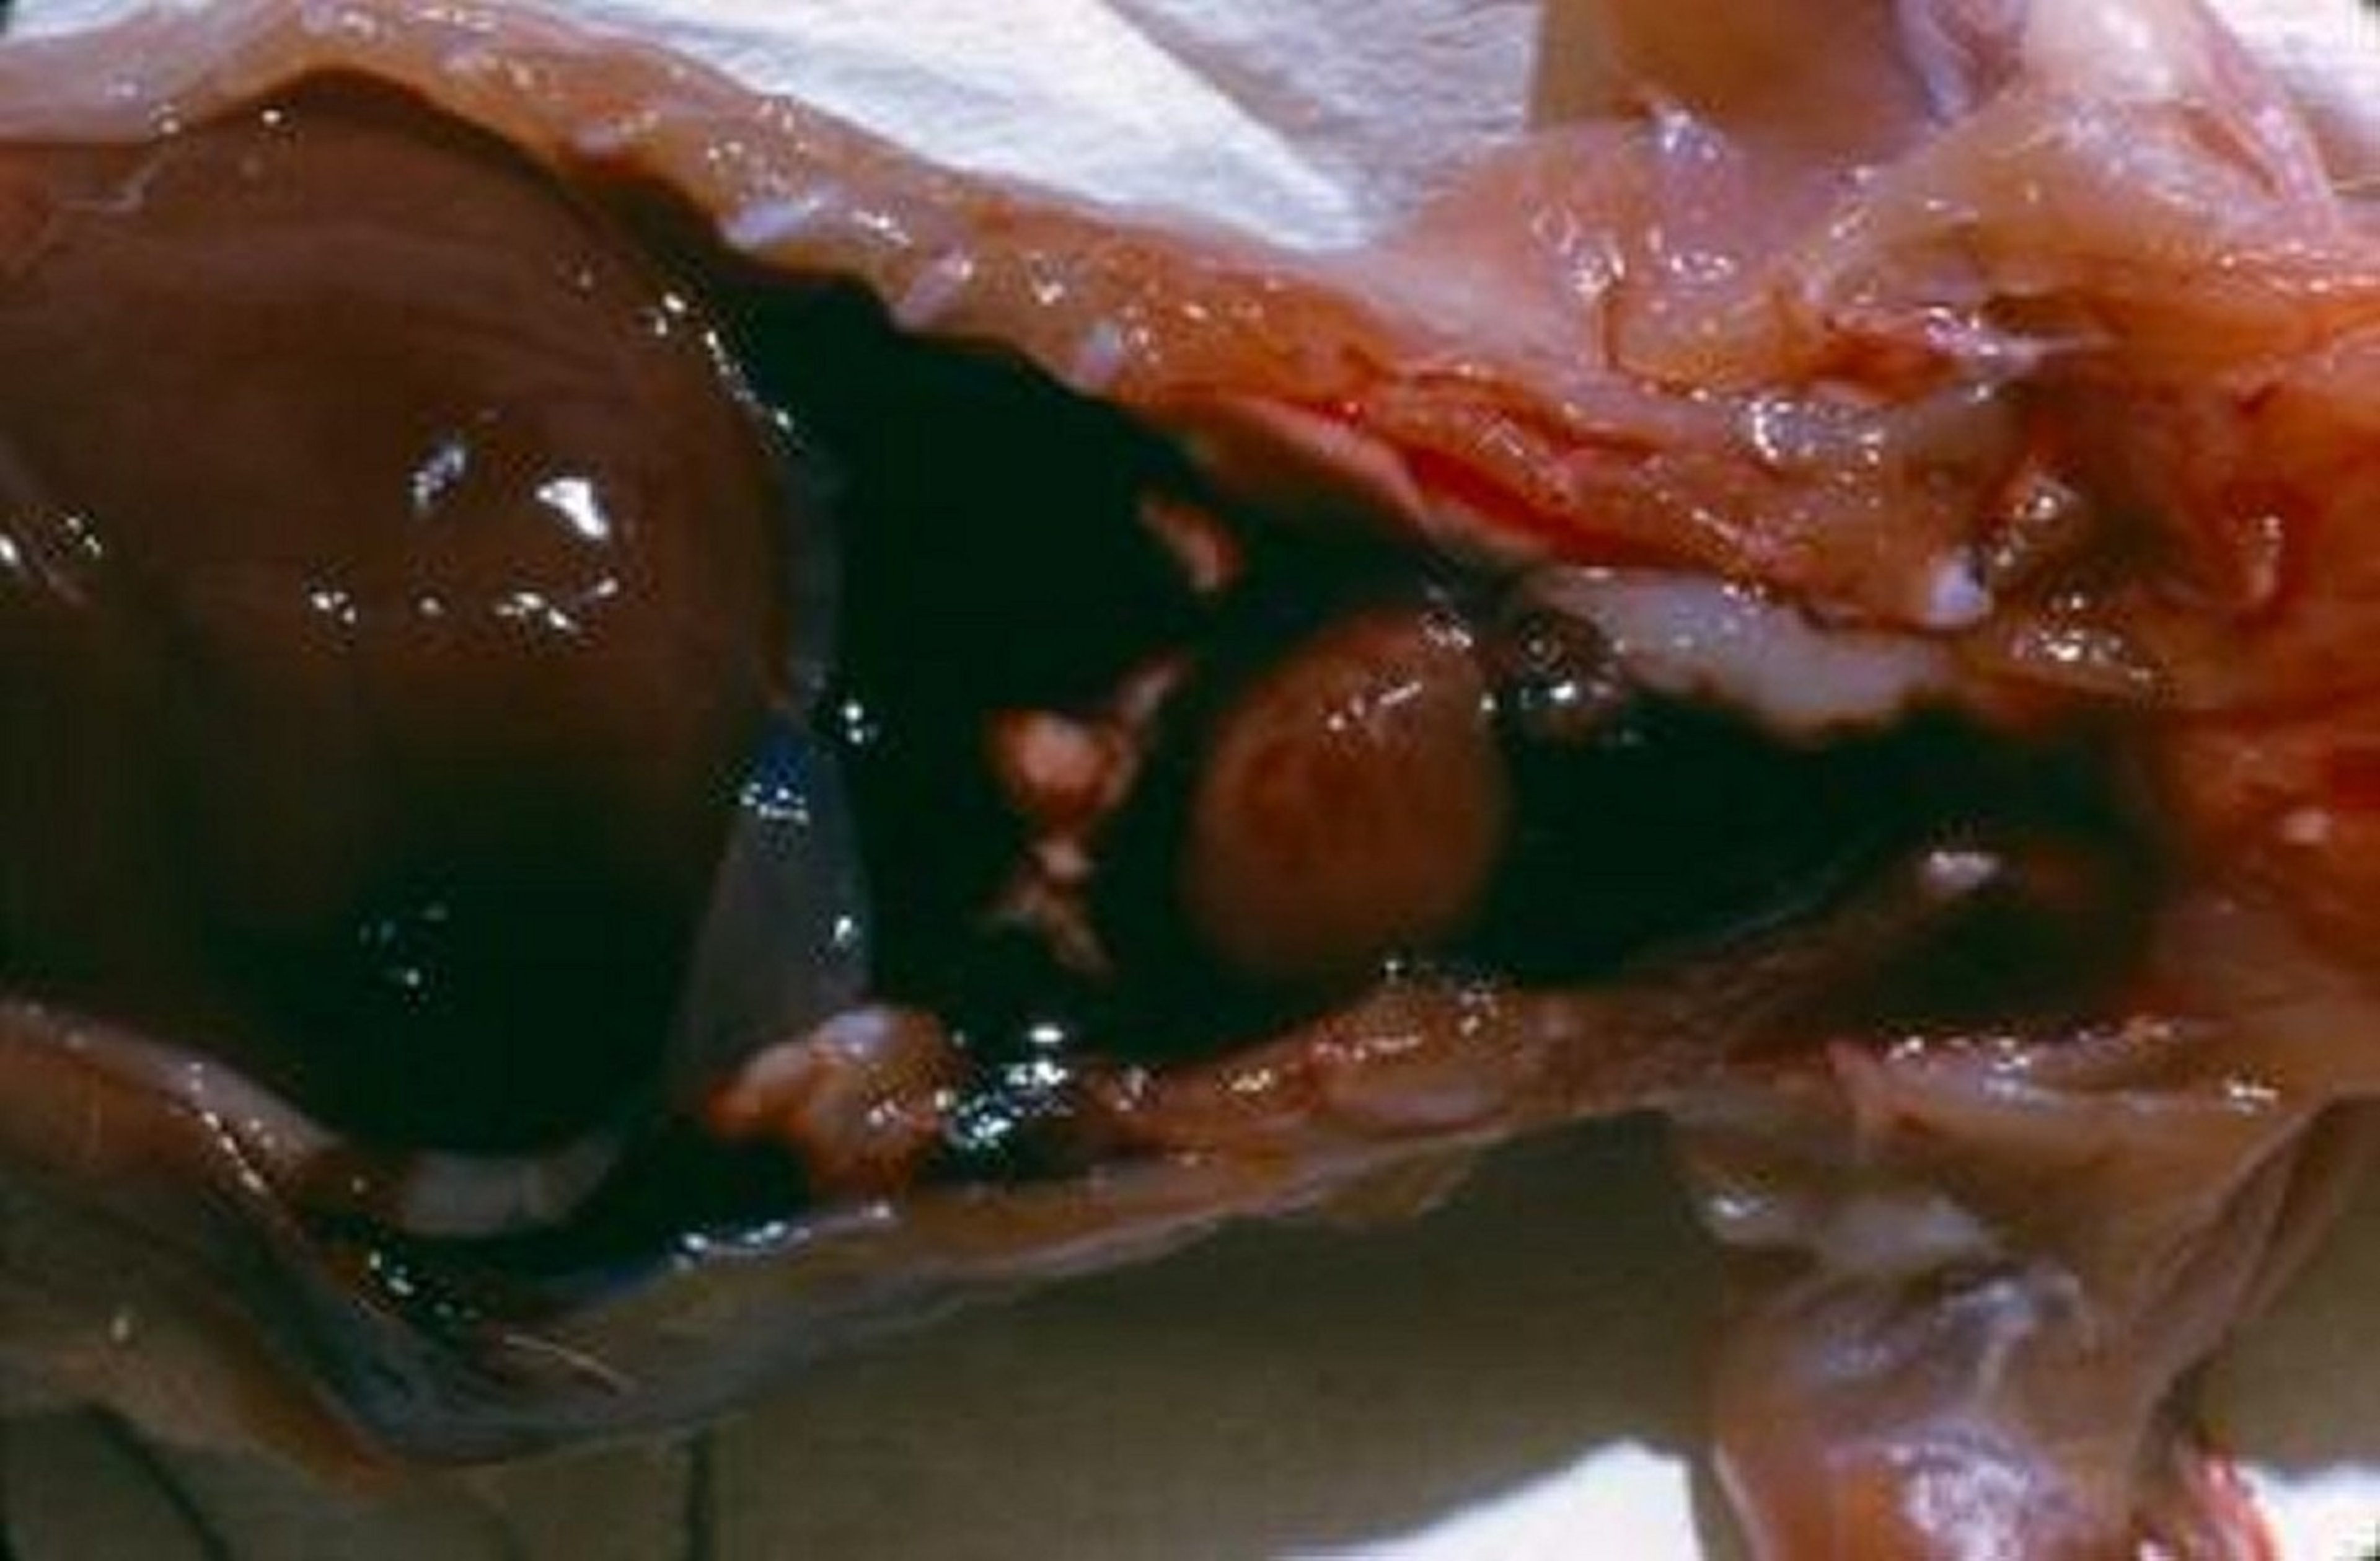 Thoracic hemorrhage, anticoagulant rodenticide poisoning